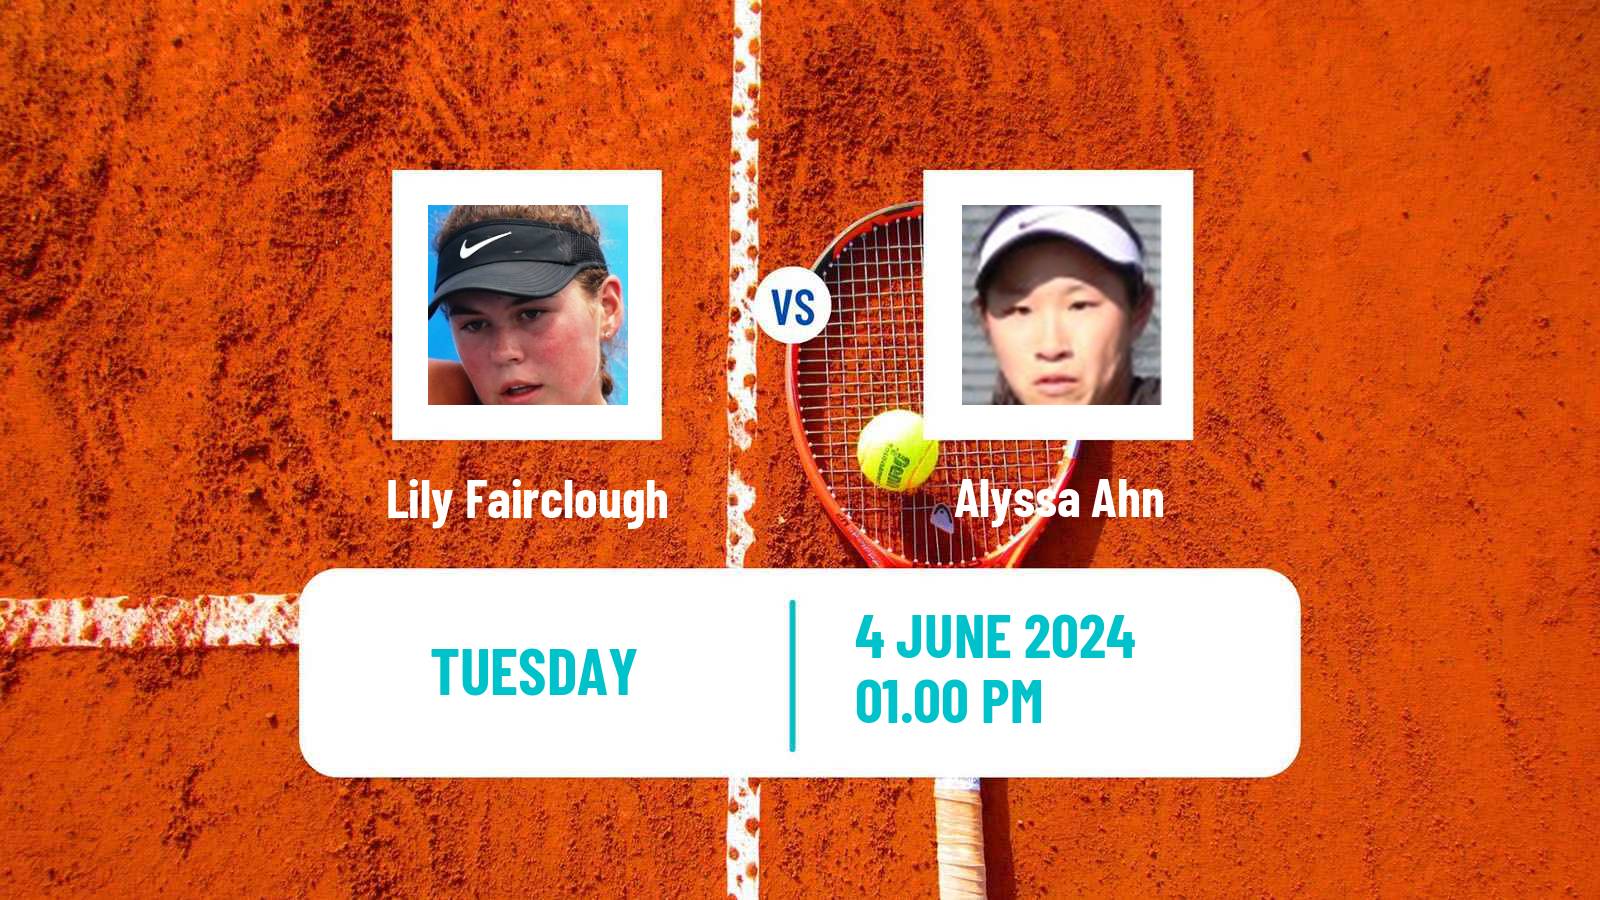 Tennis ITF W15 San Diego Ca 2 Women Lily Fairclough - Alyssa Ahn